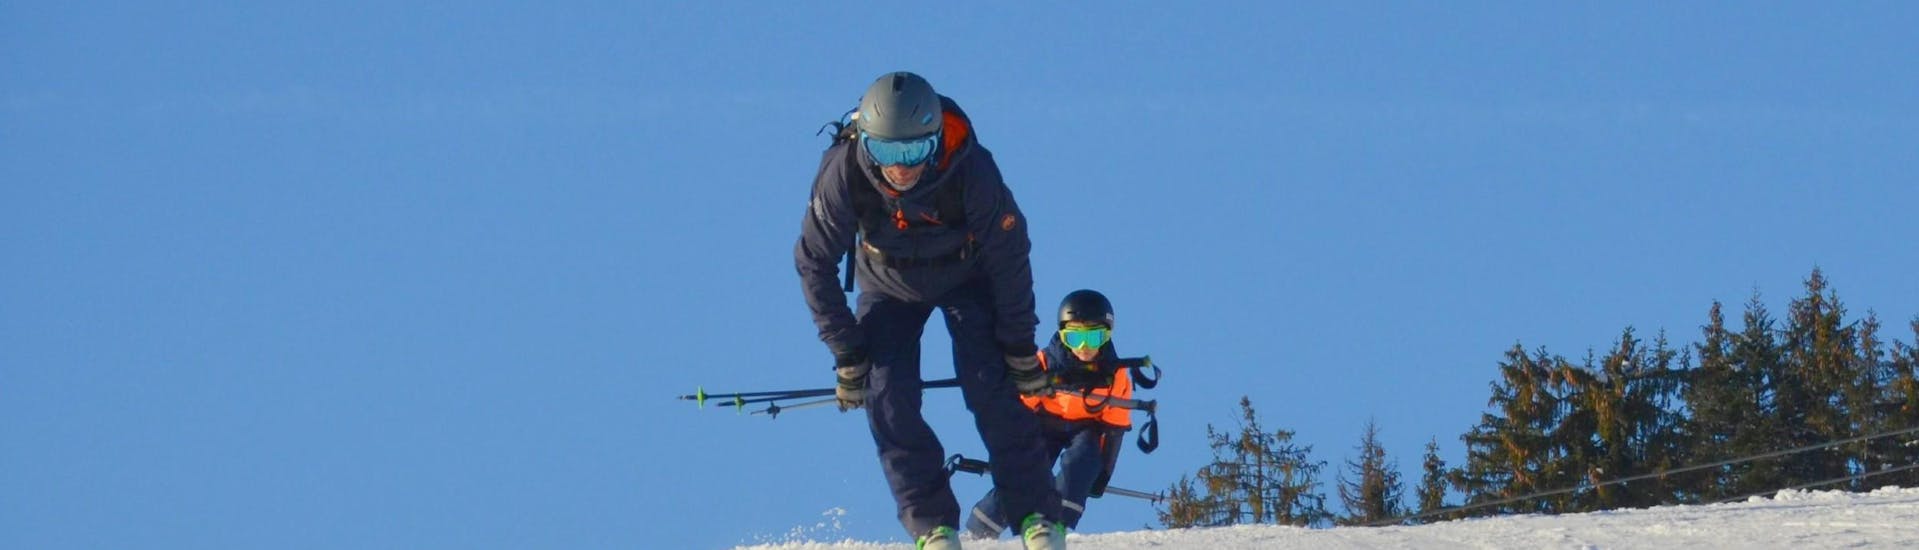 Cours particulier de ski Enfants dès 4 ans pour Tous niveaux avec Ski Sports School Mountainmind Söll.